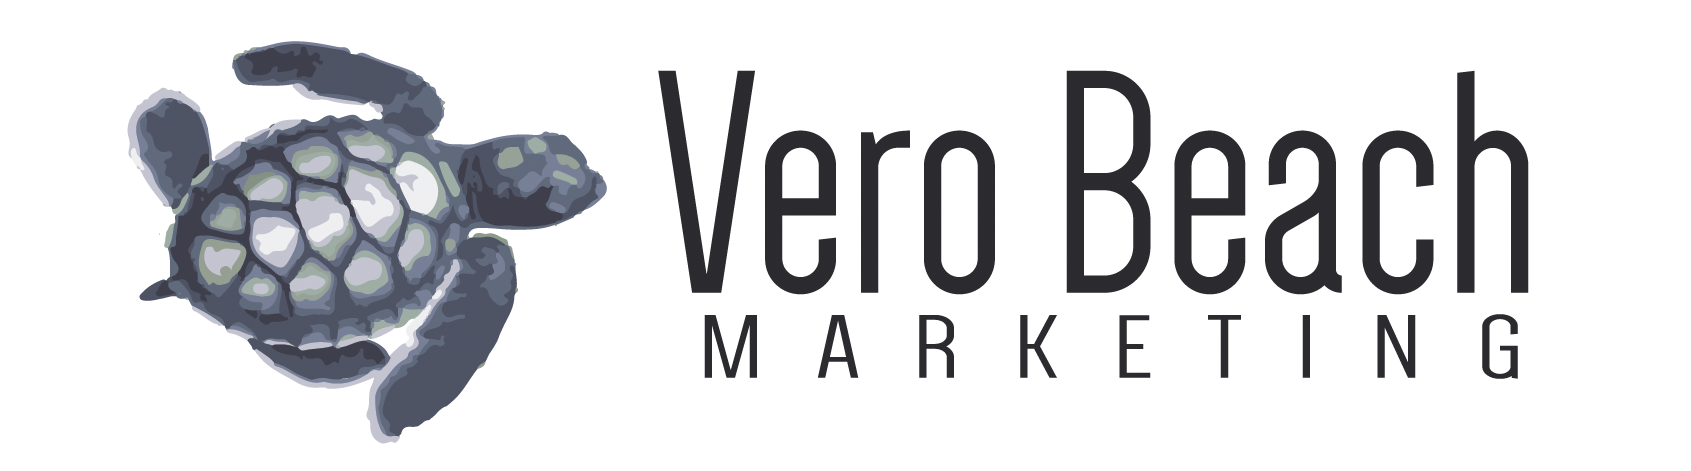 Vero Beach Marketing Photo